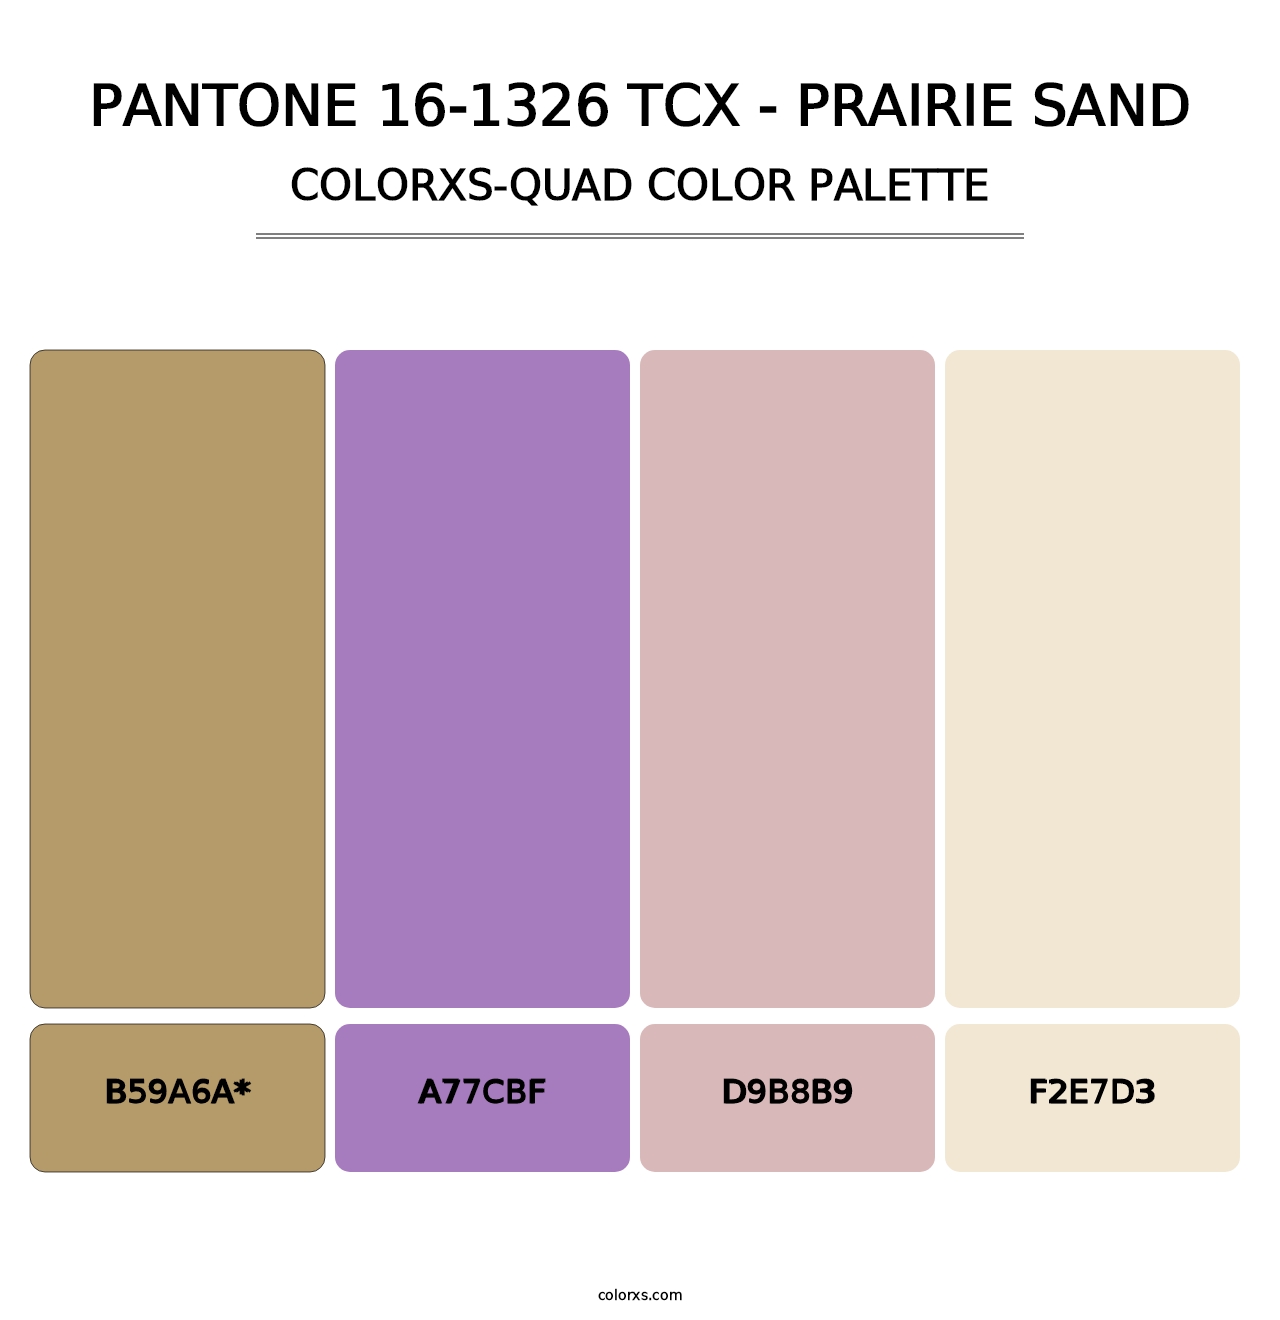 PANTONE 16-1326 TCX - Prairie Sand - Colorxs Quad Palette